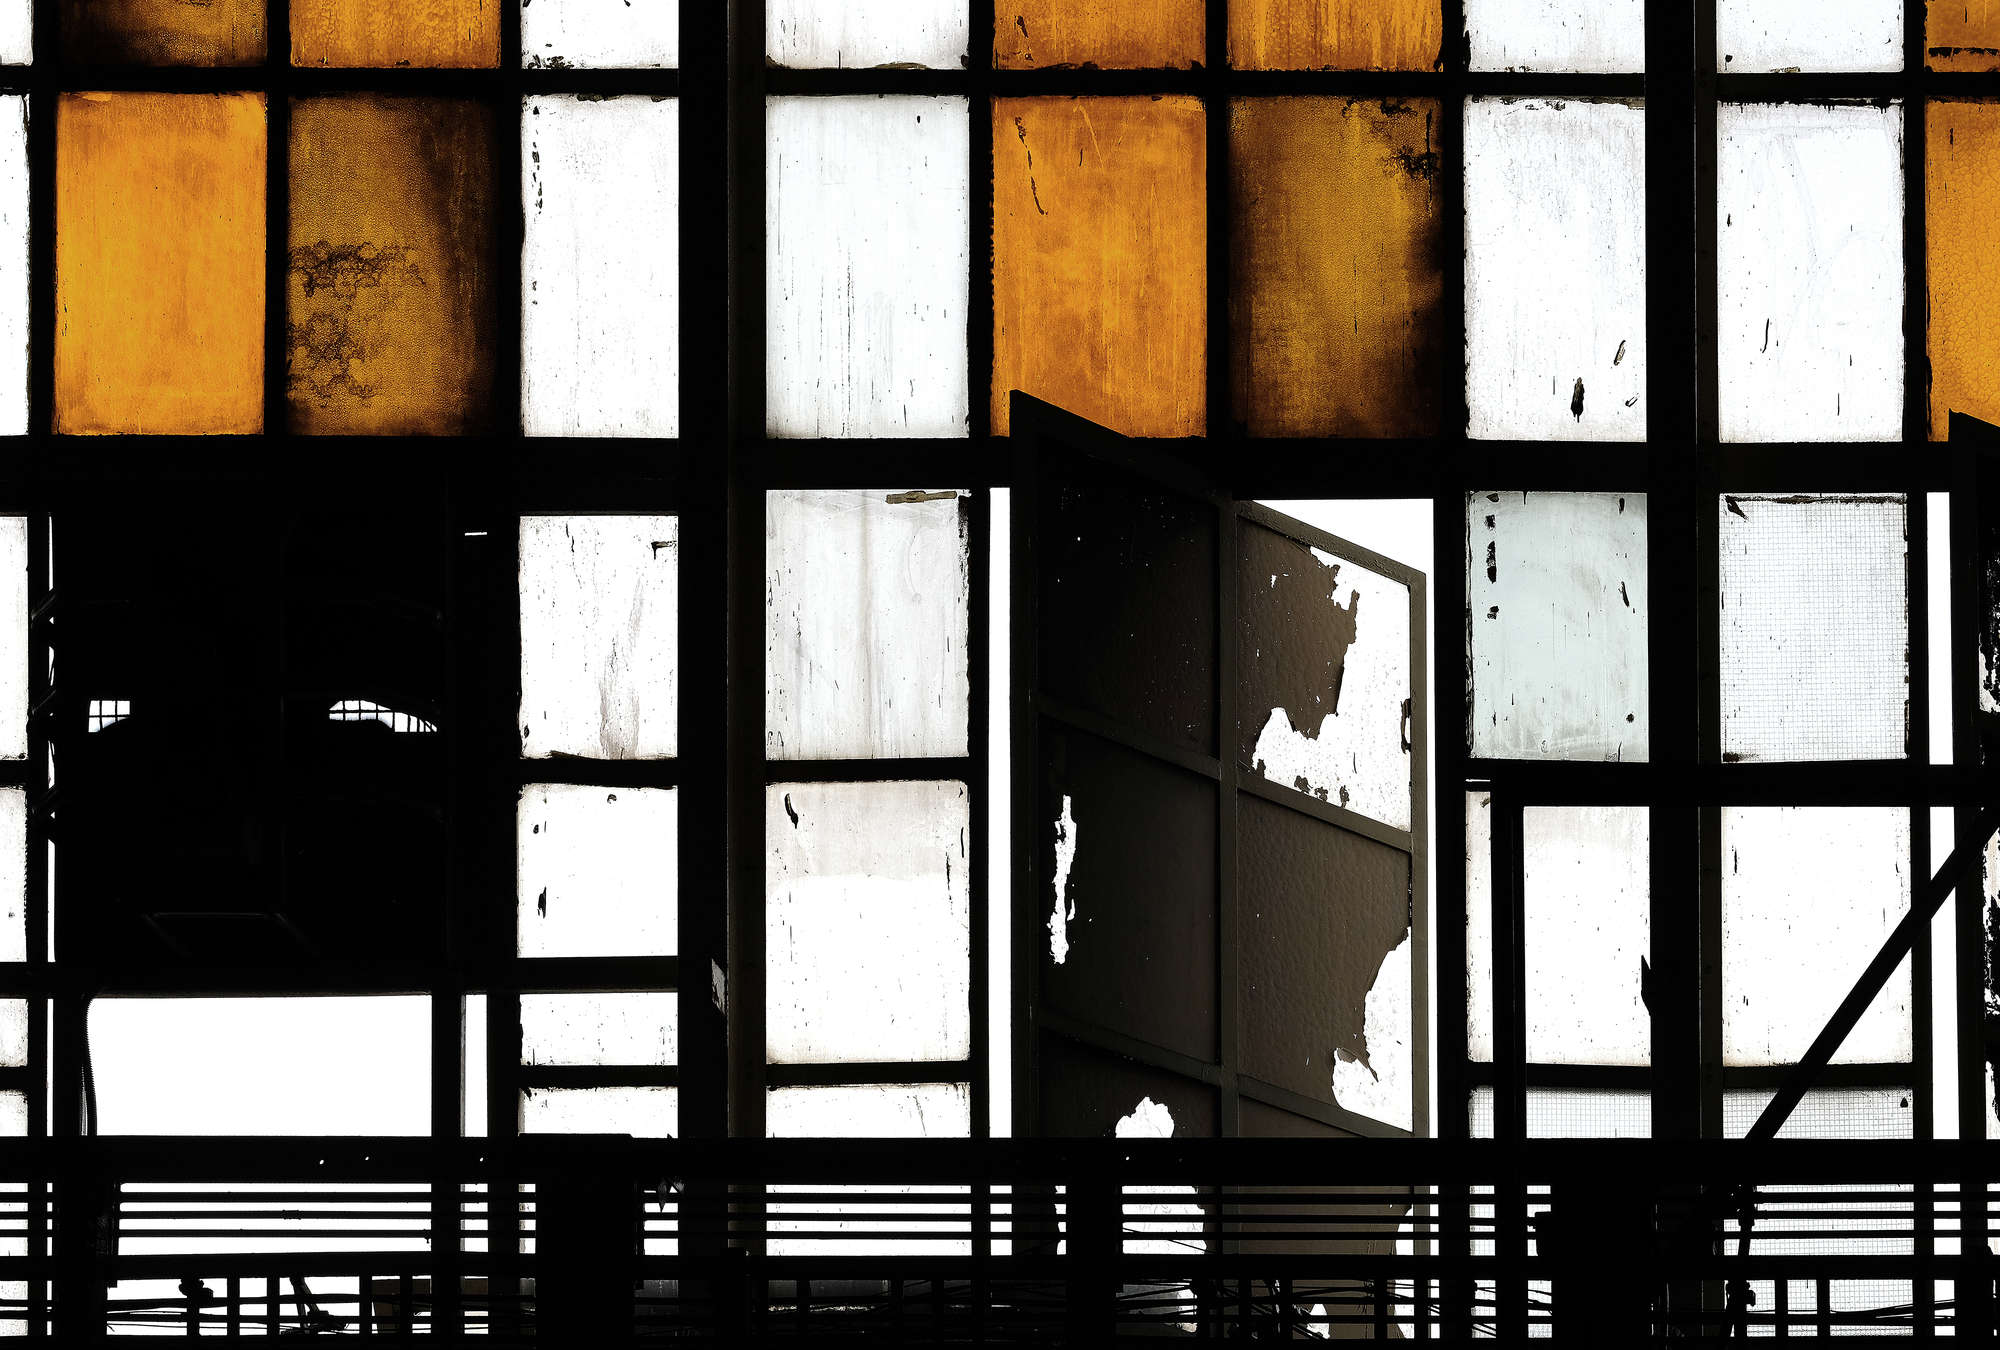             Bronx 2 - Fototapete, Loft mit Buntglas-Fenstern – Orange, Schwarz | Perlmutt Glattvlies
        